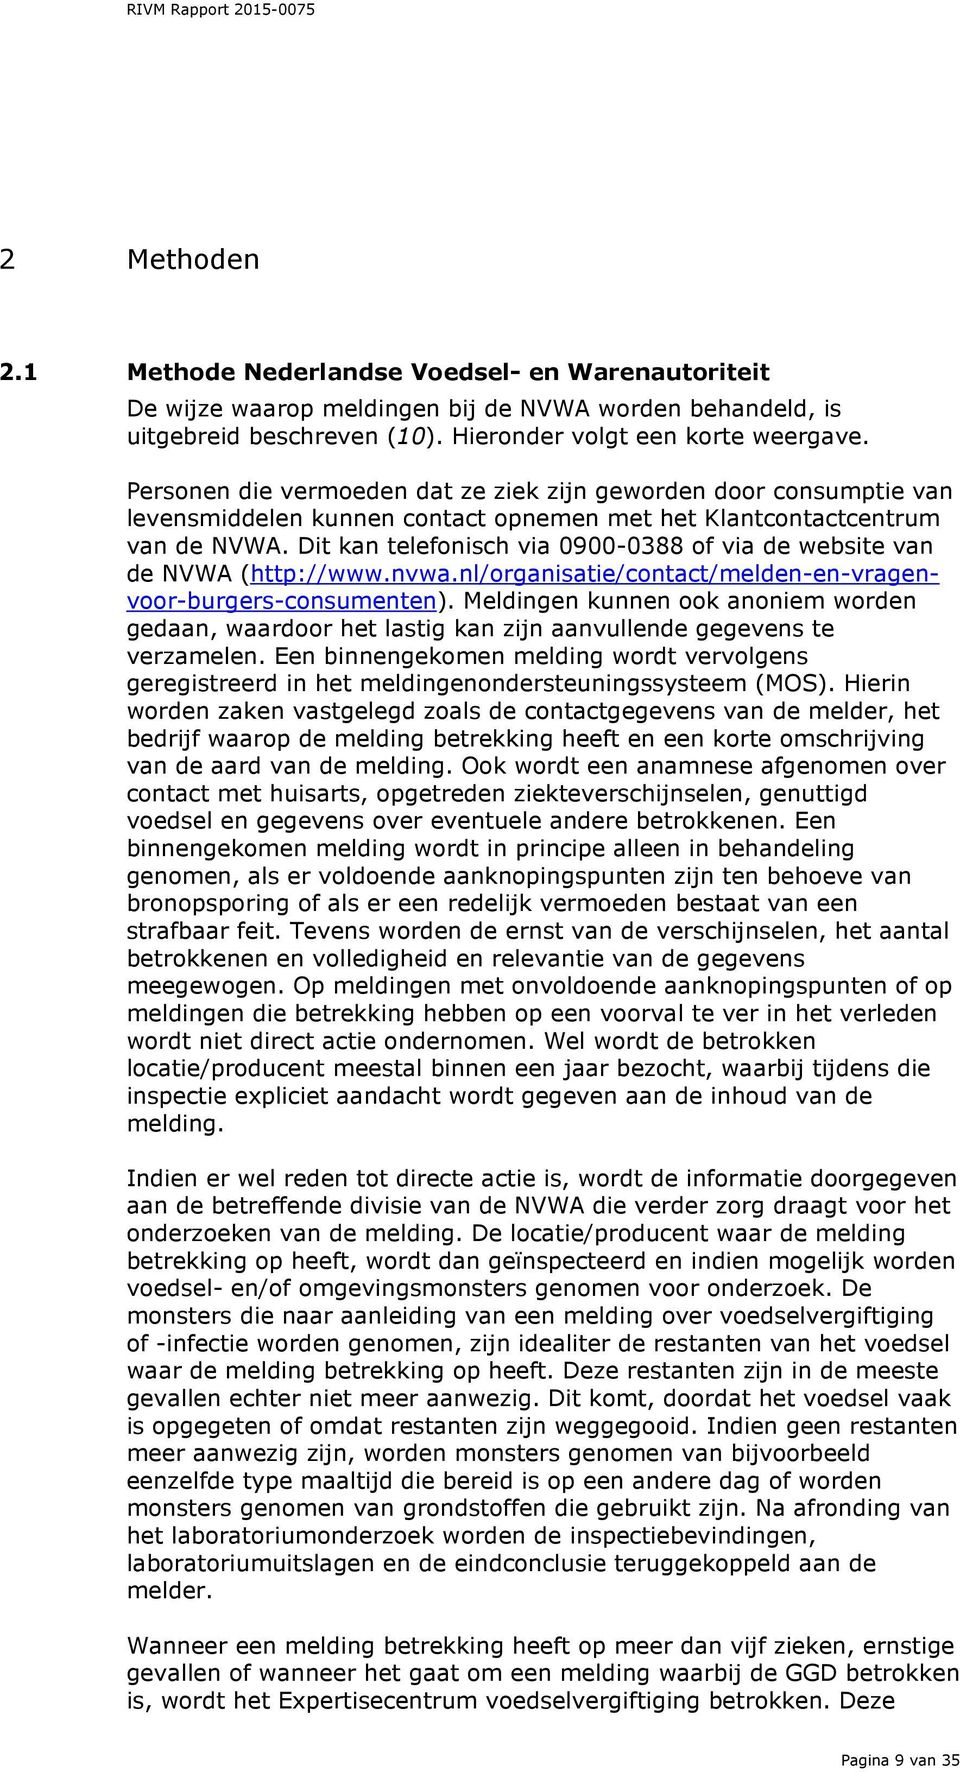 Dit kan telefonisch via 0900-0388 of via de website van de NVWA (http://www.nvwa.nl/organisatie/contact/melden-en-vragenvoor-burgers-consumenten).